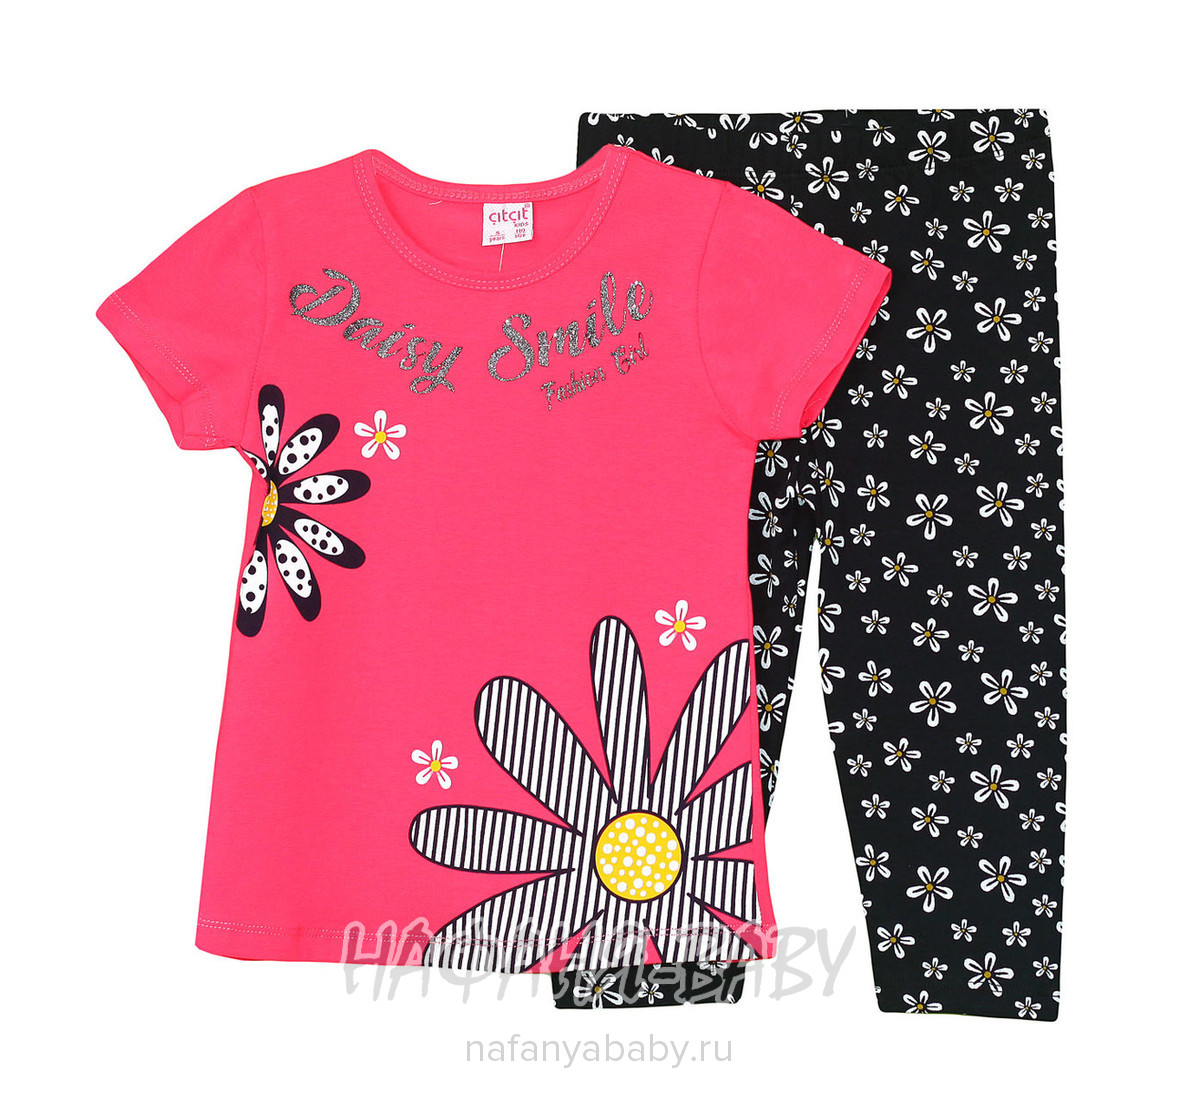 Детский костюм (футболка+лосины) Cit Cit, купить в интернет магазине Нафаня. арт: 4661.